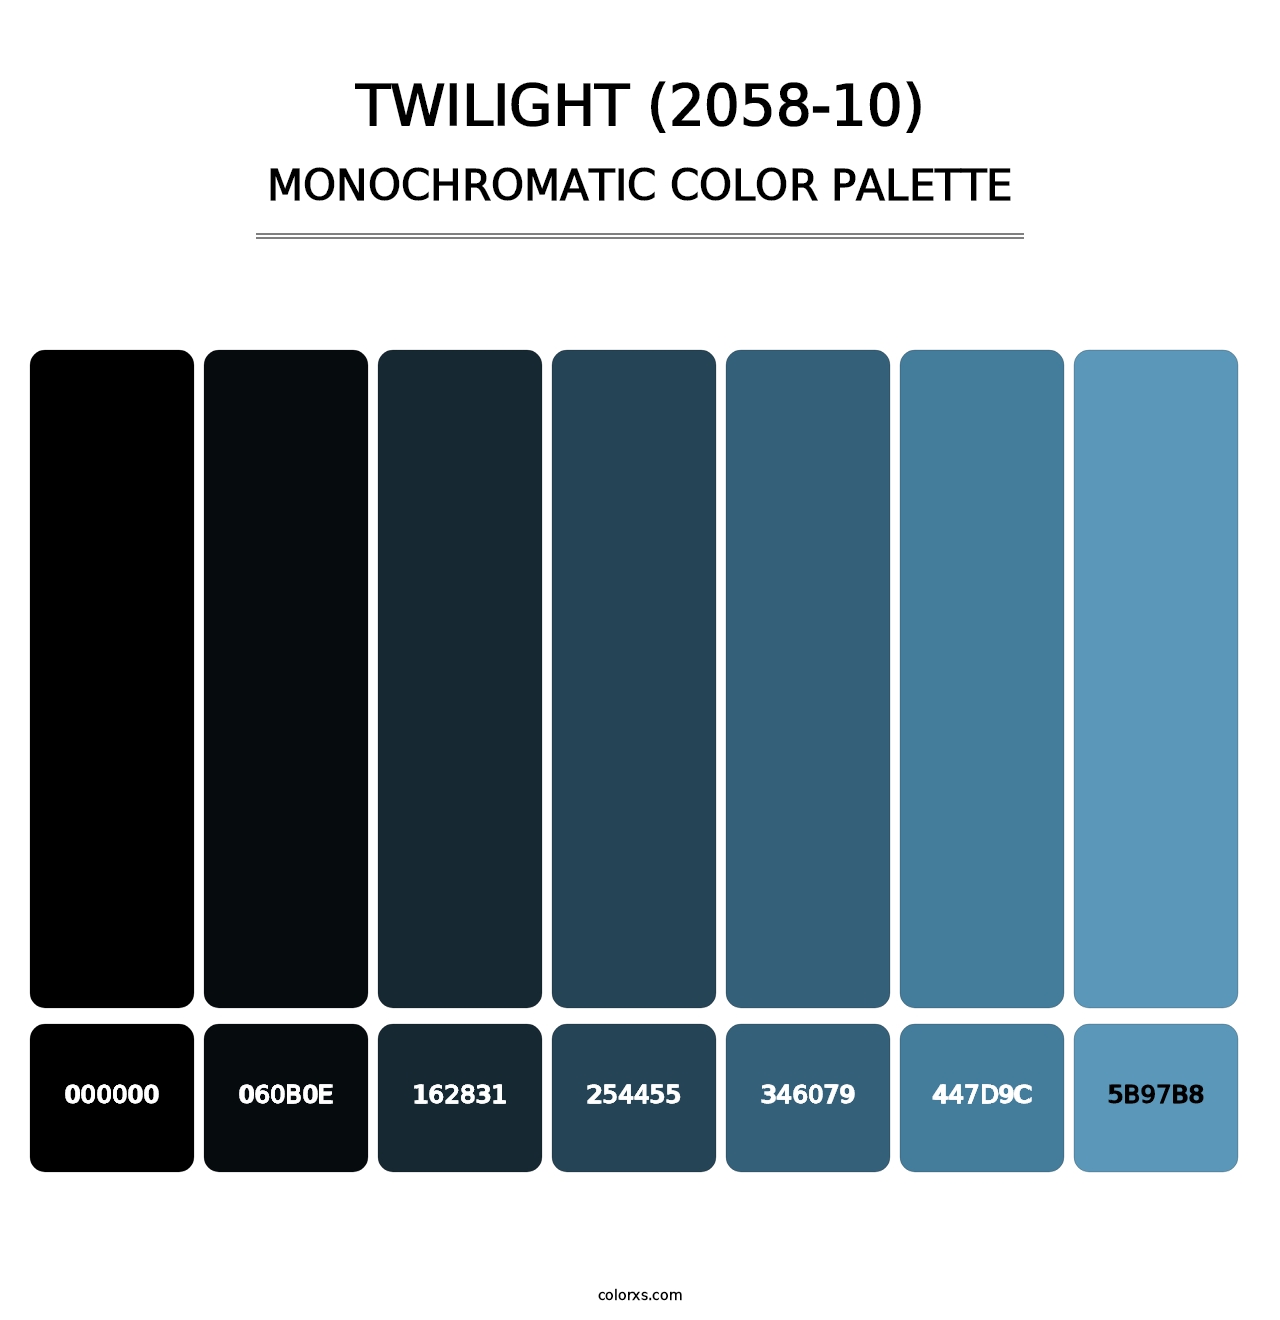 Twilight (2058-10) - Monochromatic Color Palette